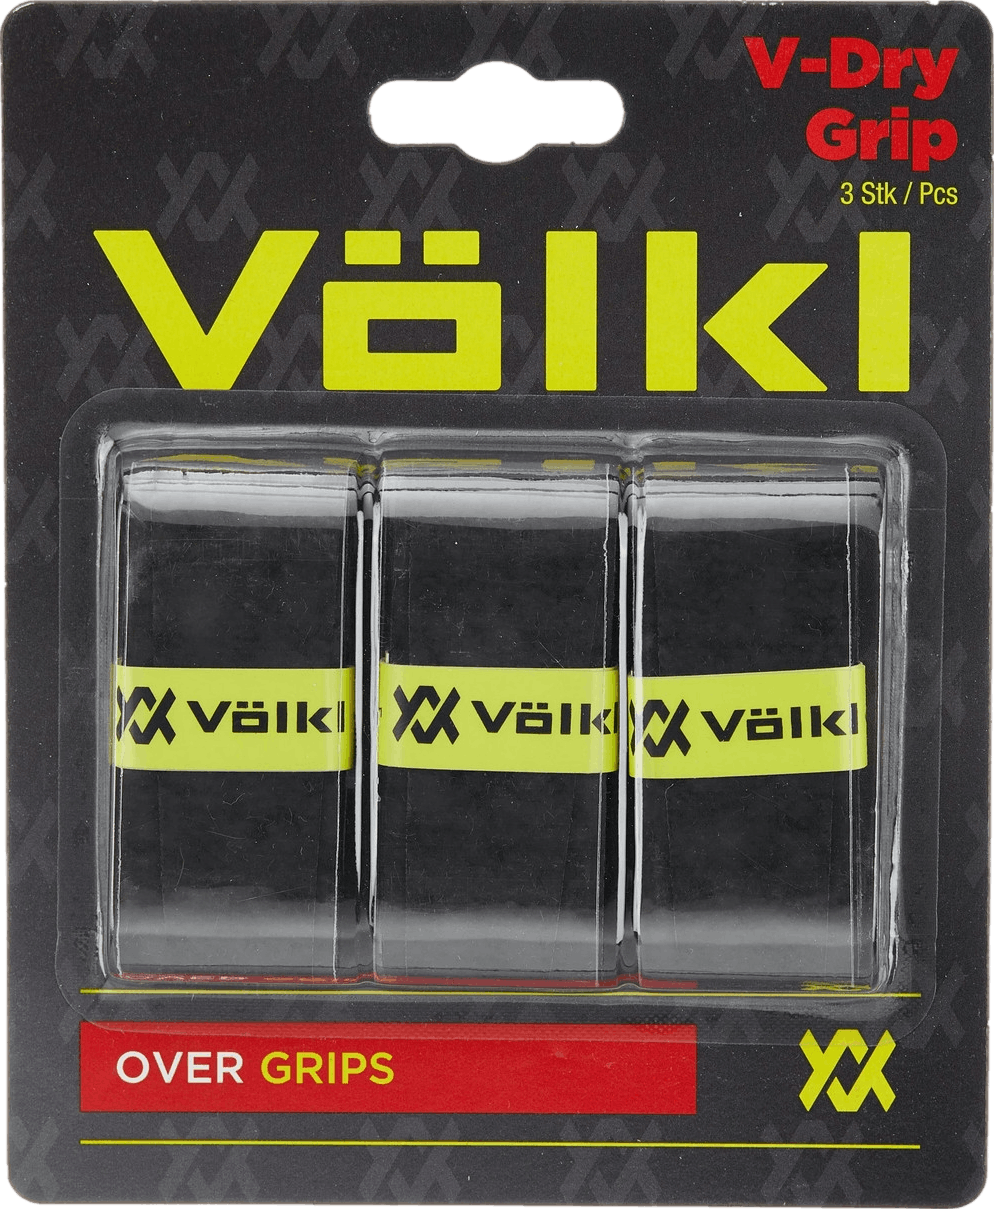 Volkl V Dry Overgrip 3 Pack - White